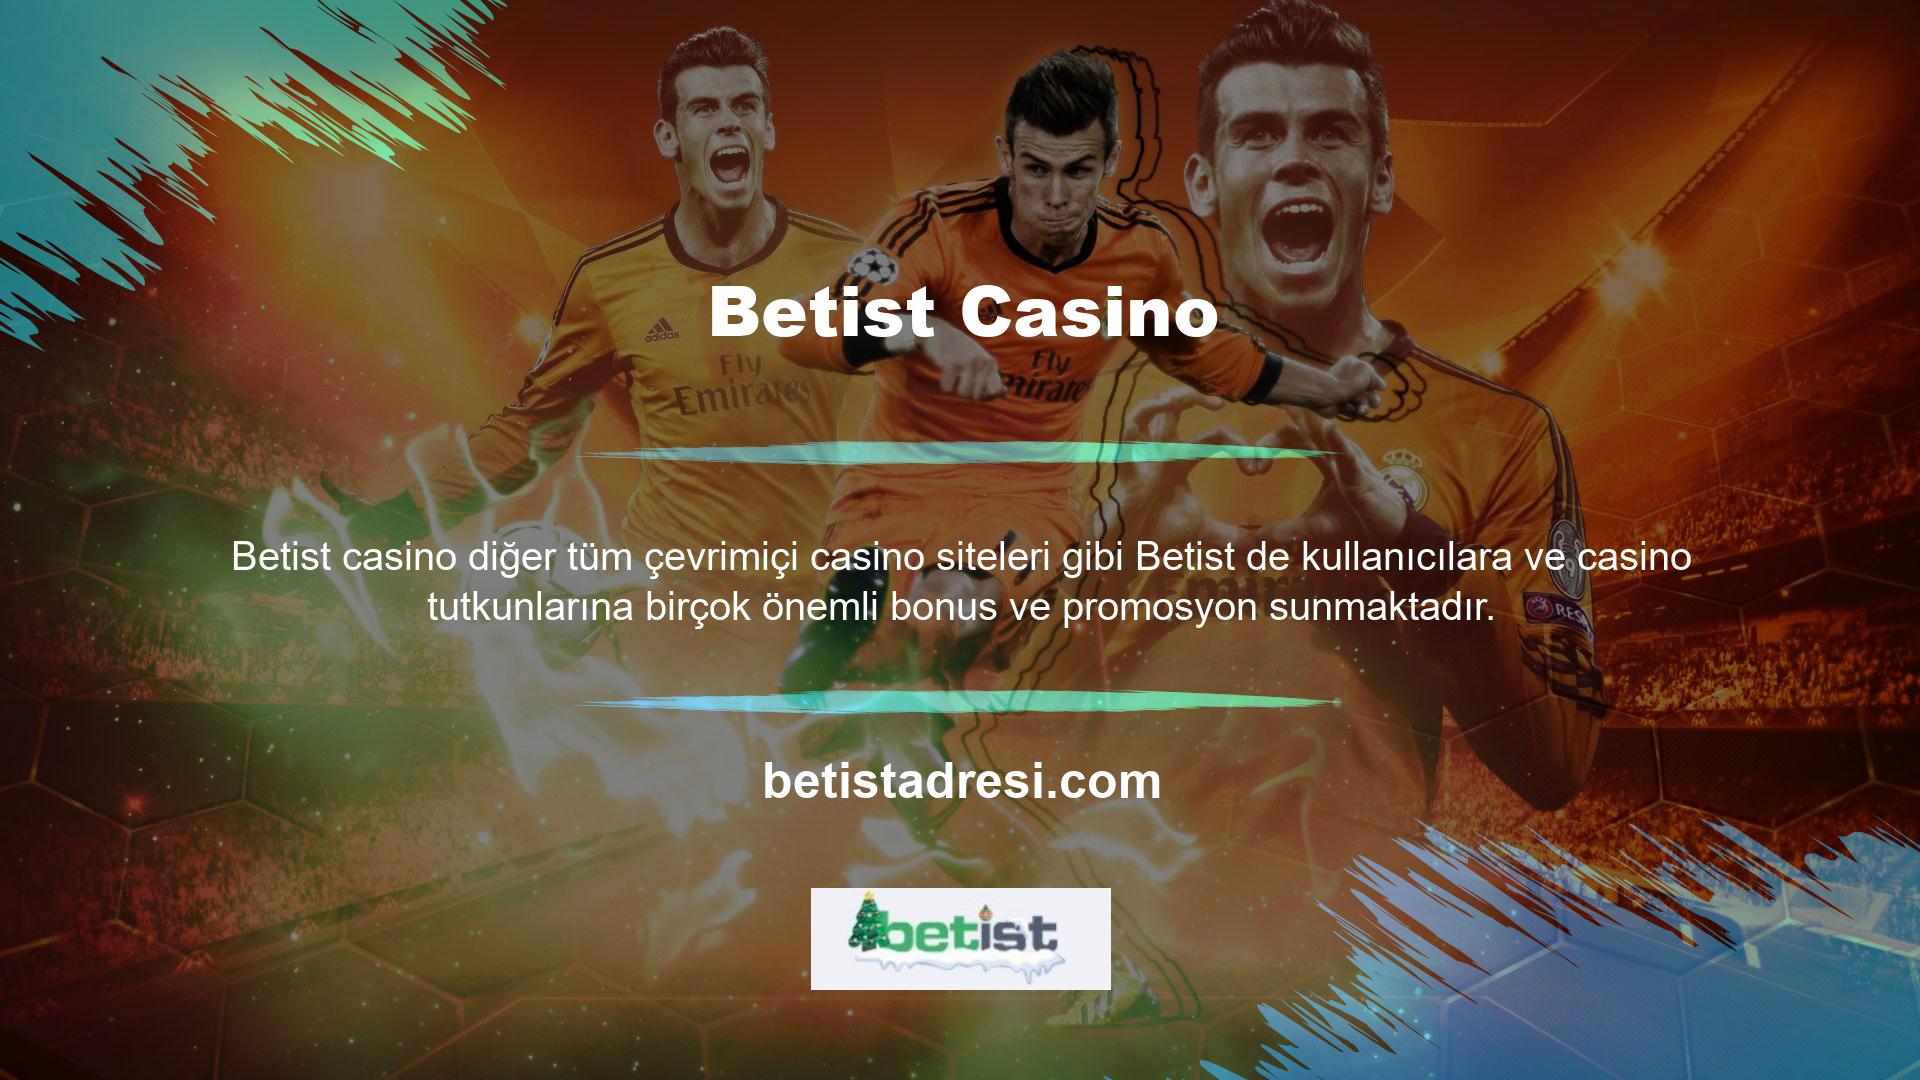 Betist web sitesi bu bonuslar konusunda çok açık ve bu özellik kullanıcıları ve oyuncuları mutlu ediyor